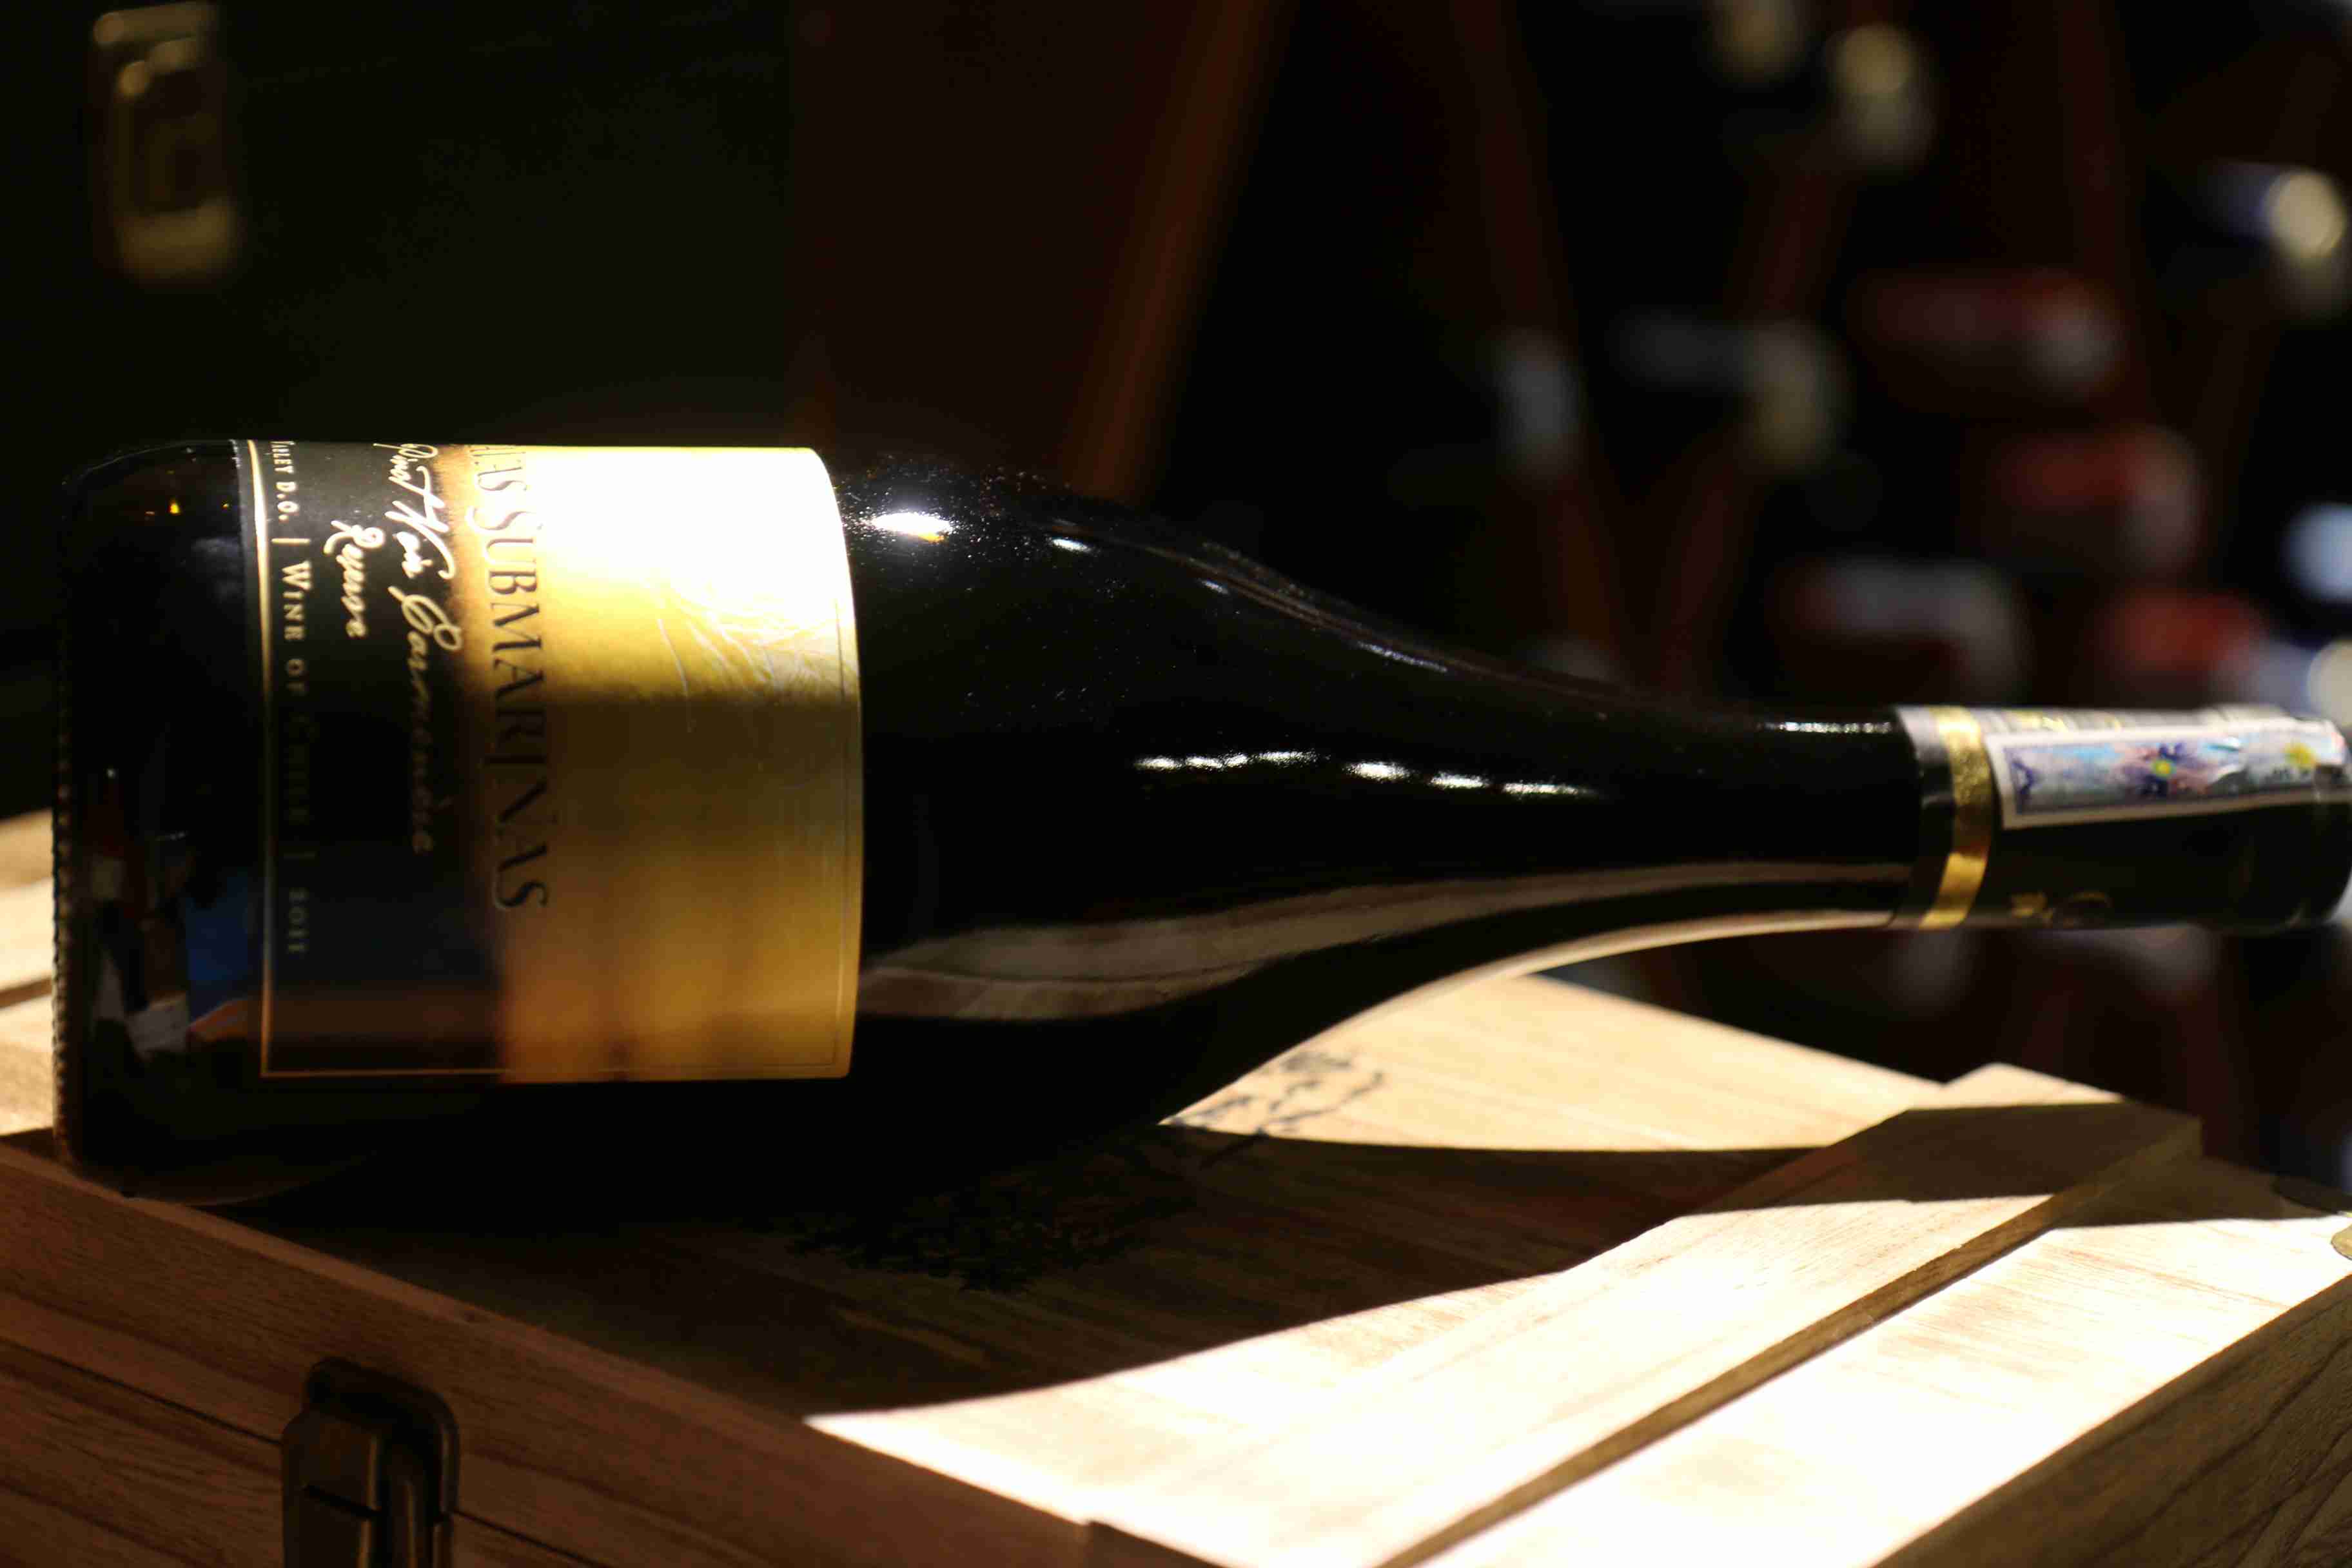 Rượu vang Chile Cavas Submarinas Pinot Noir Carmenere reserve